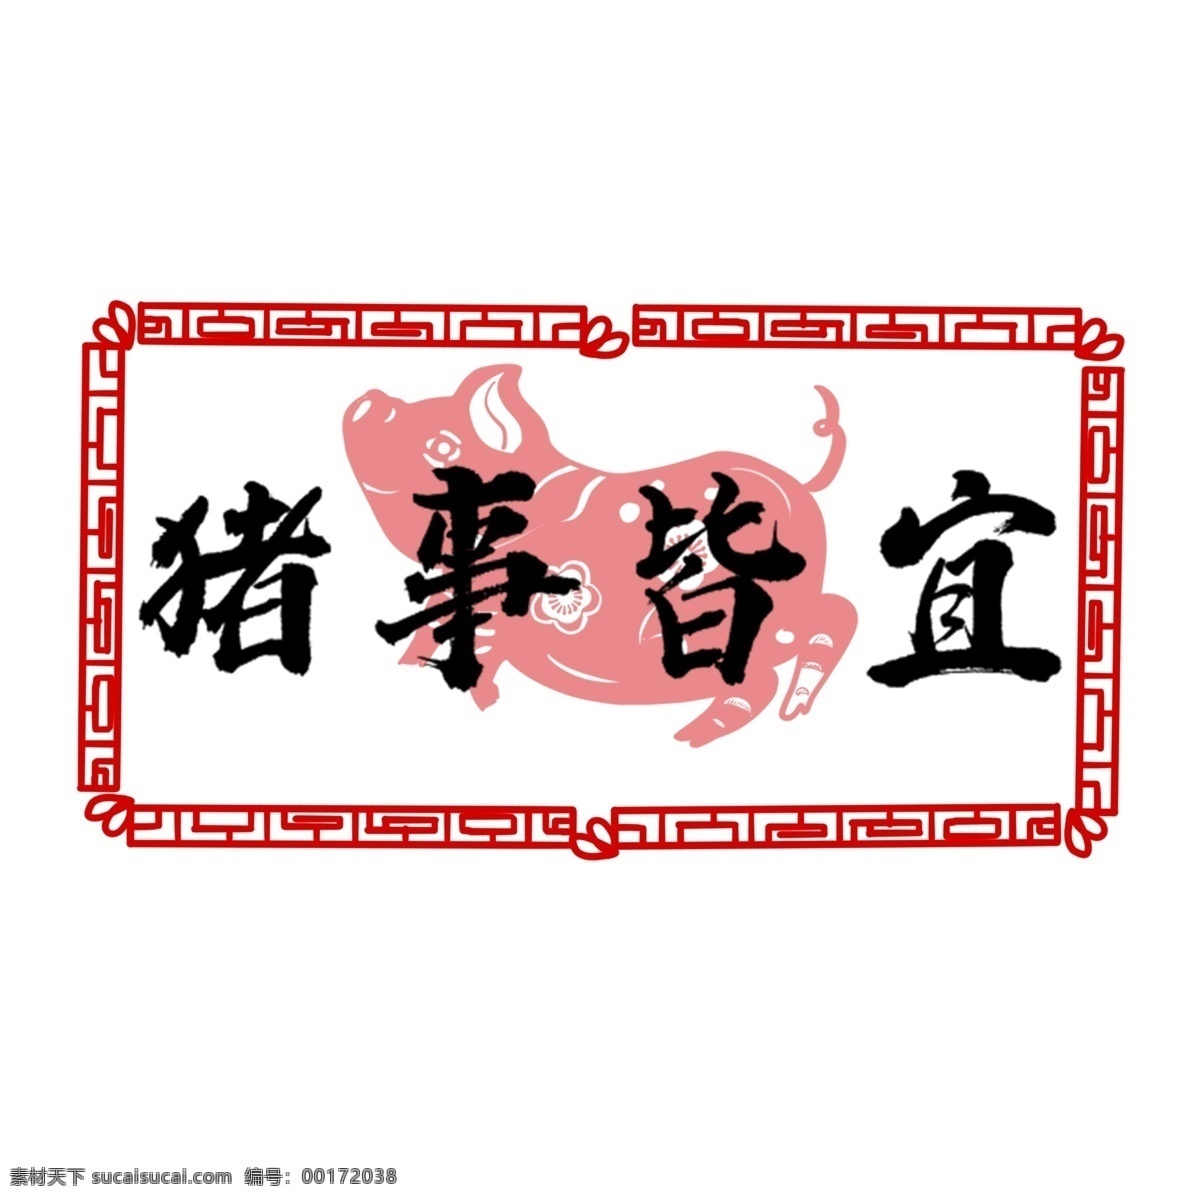 猪 事 皆 宜 书法艺术 字 水墨 中国 风 手绘 新年 春节 艺术字 中国风 水墨风 猪事皆宜